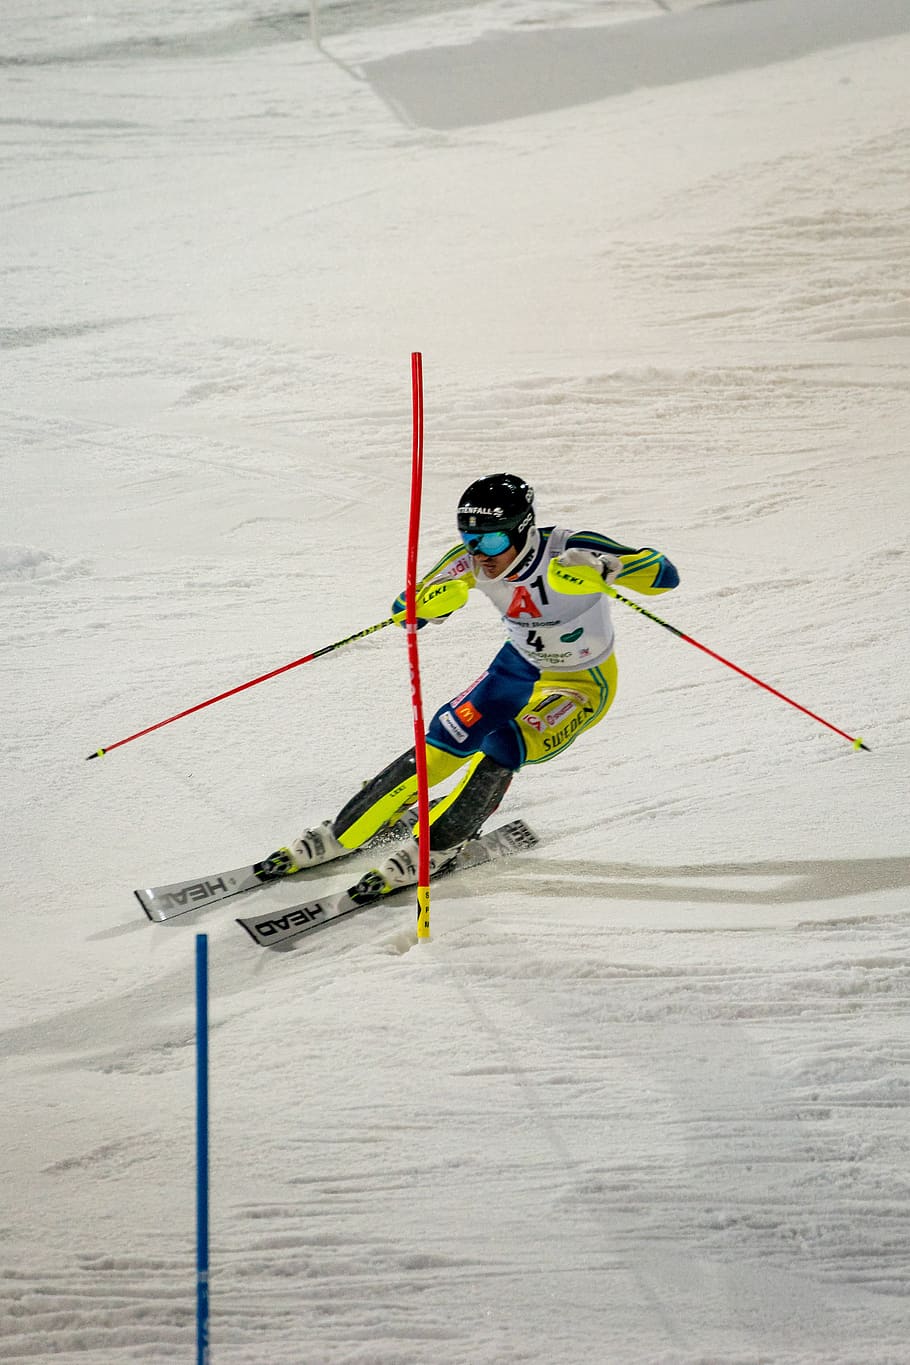 competição, pressa, corrida, esporte, rápido, slalom, corrida noturna, esqui, temperatura fria, esporte de inverno